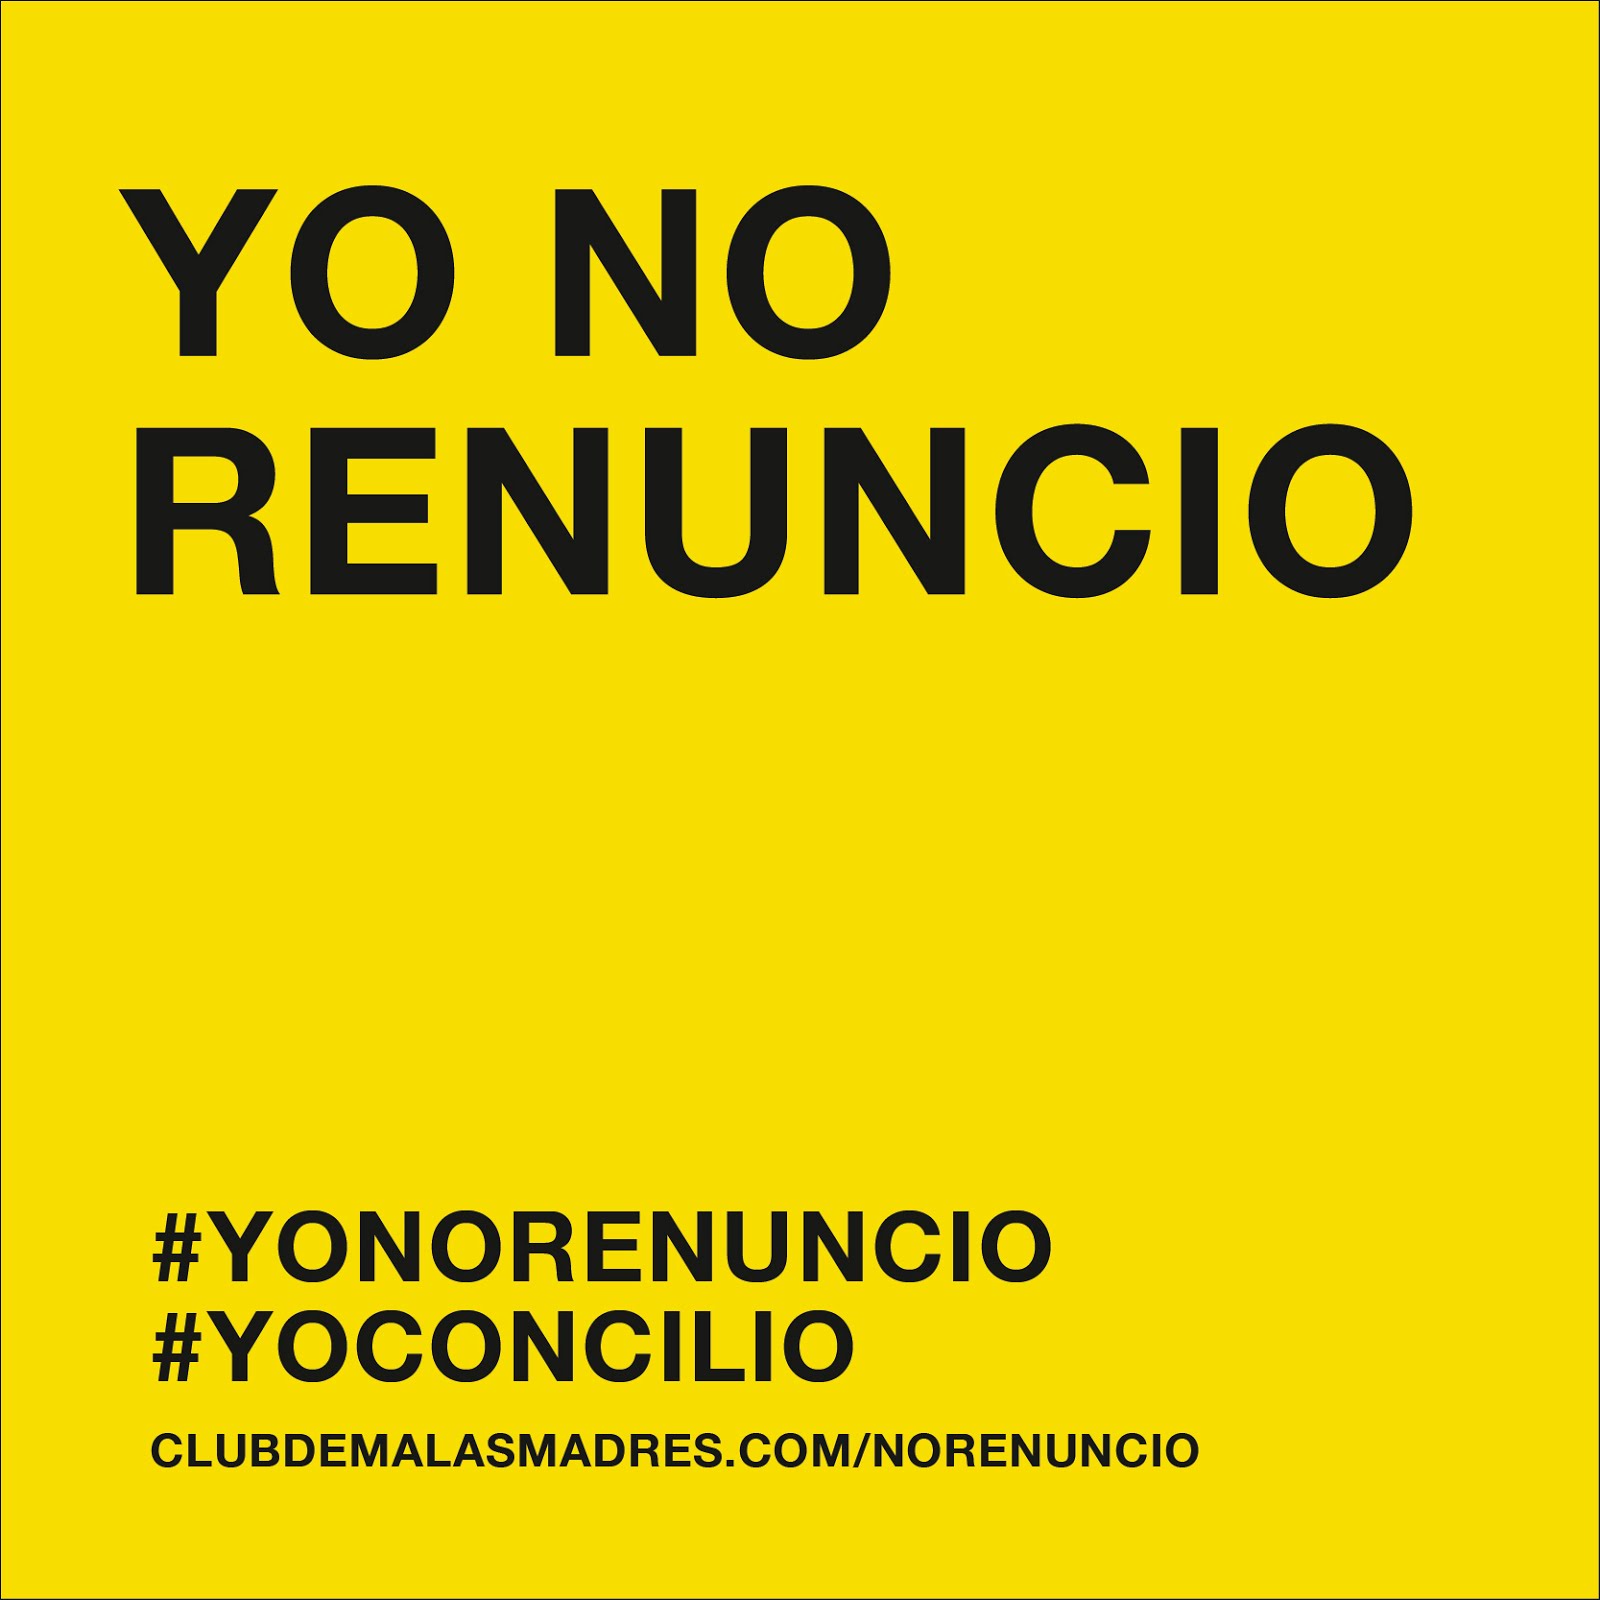 #yonorenuncio